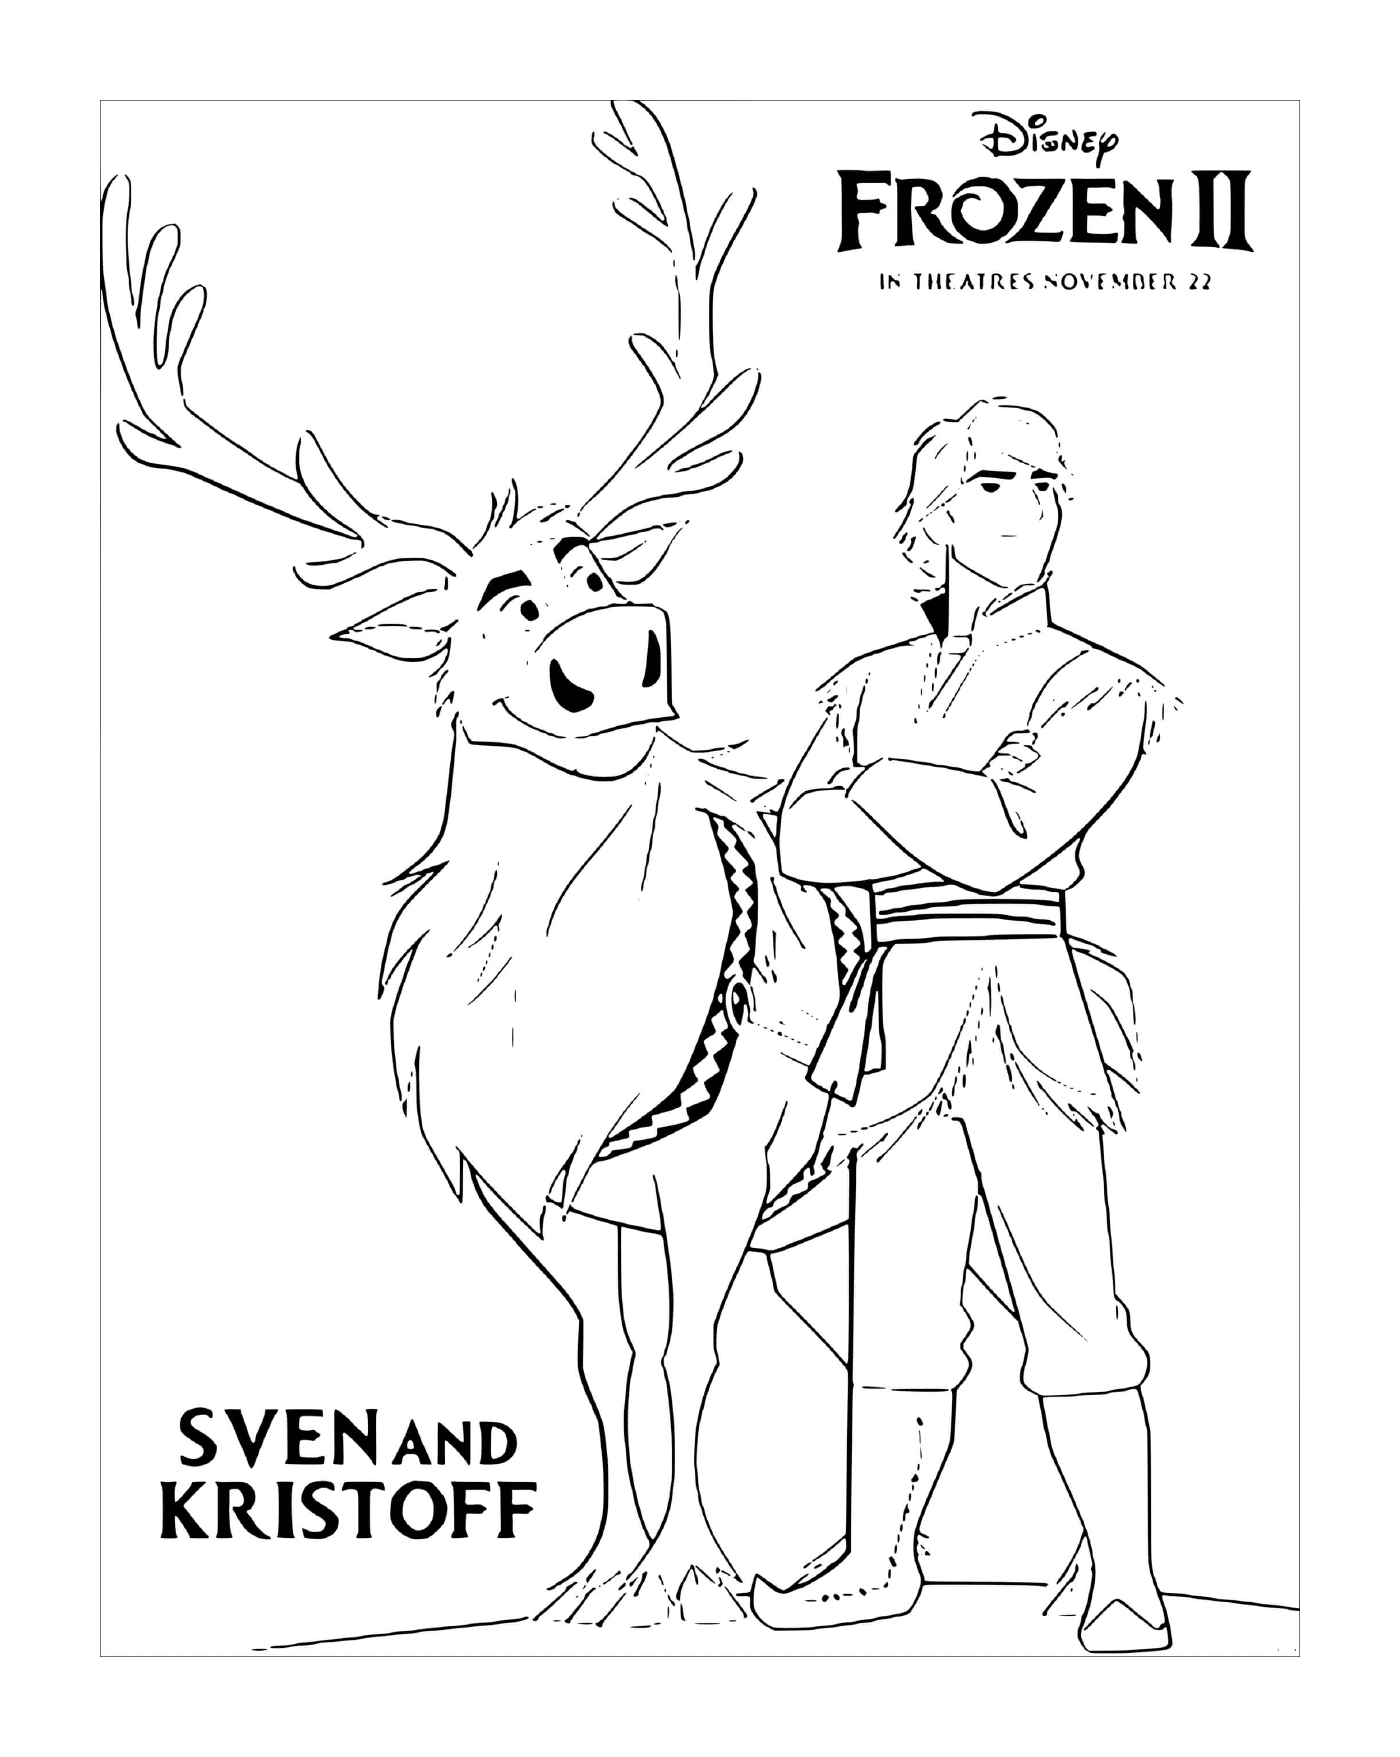   Sven et Kristoff cherchent Elsa 